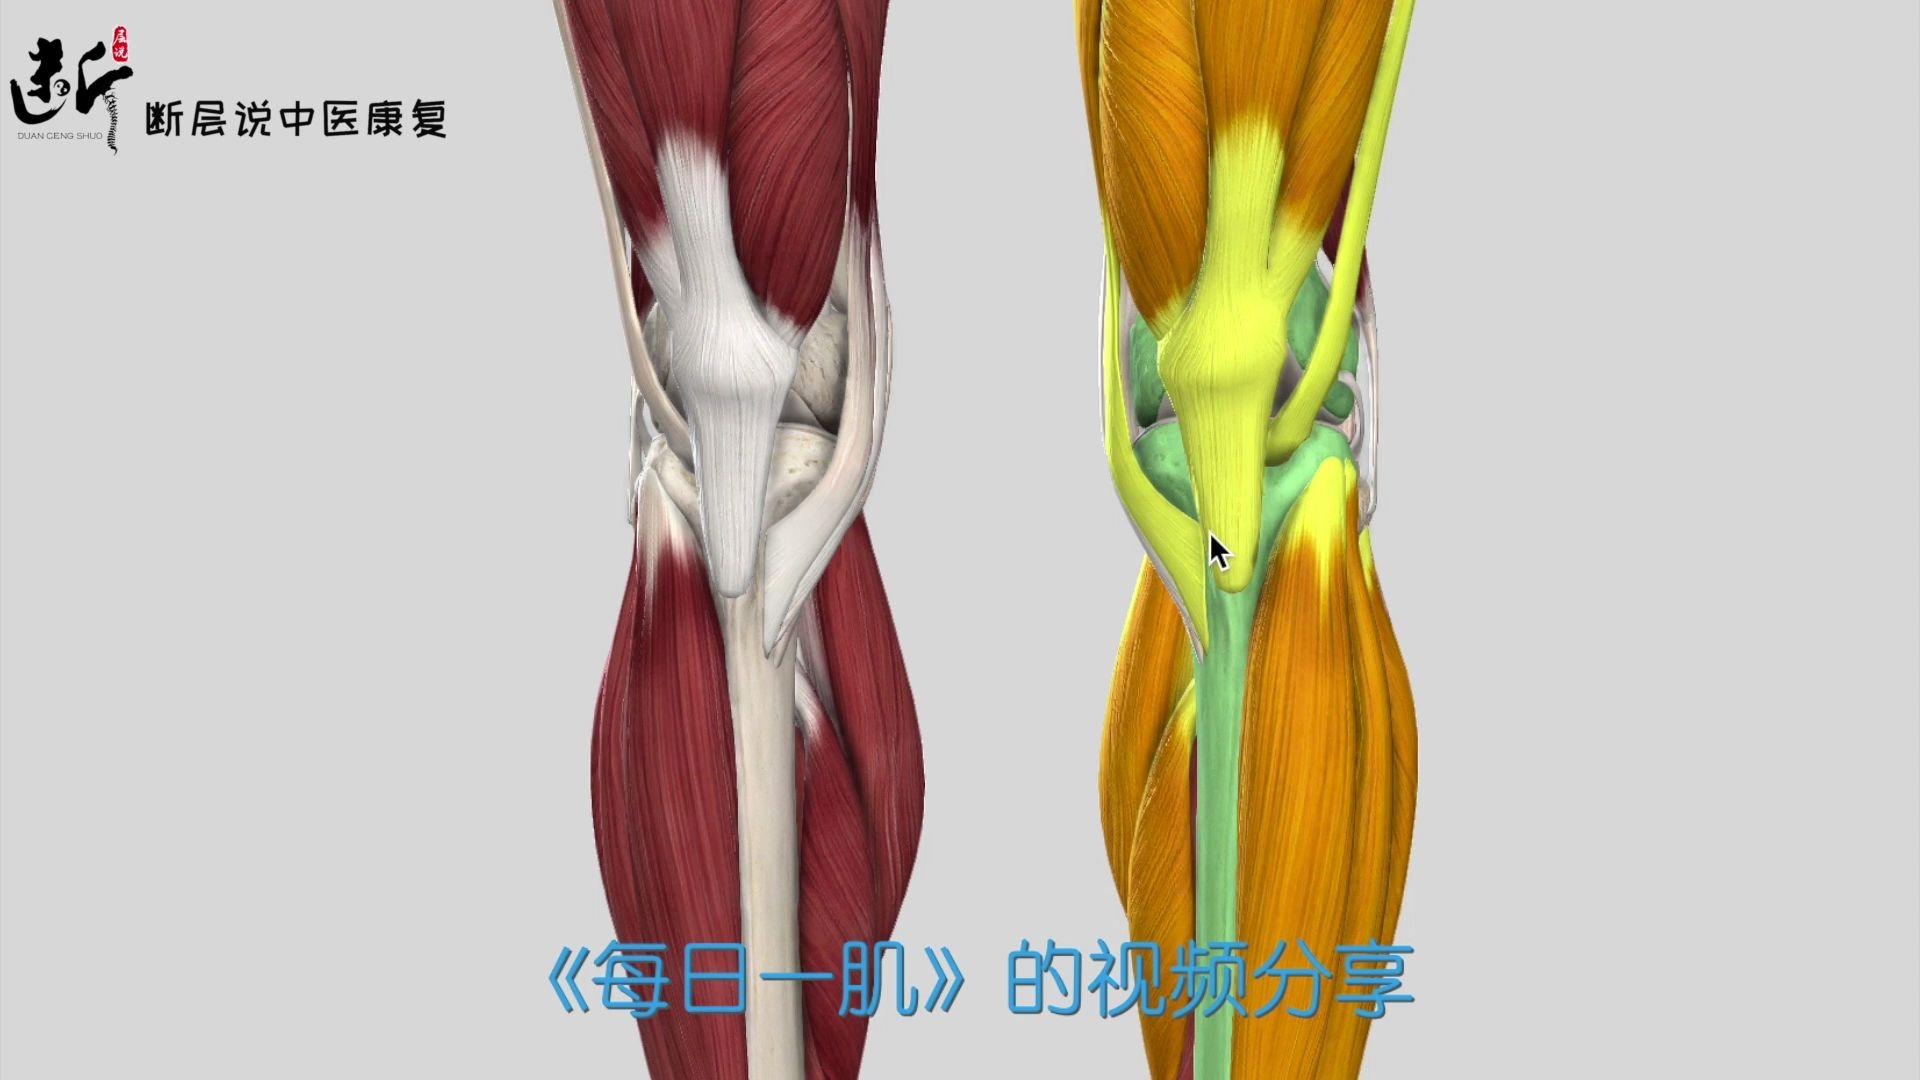 【干货】膝关节前、后、内、外疼痛分别怎么办？一条视频带你总结膝部肌肉！